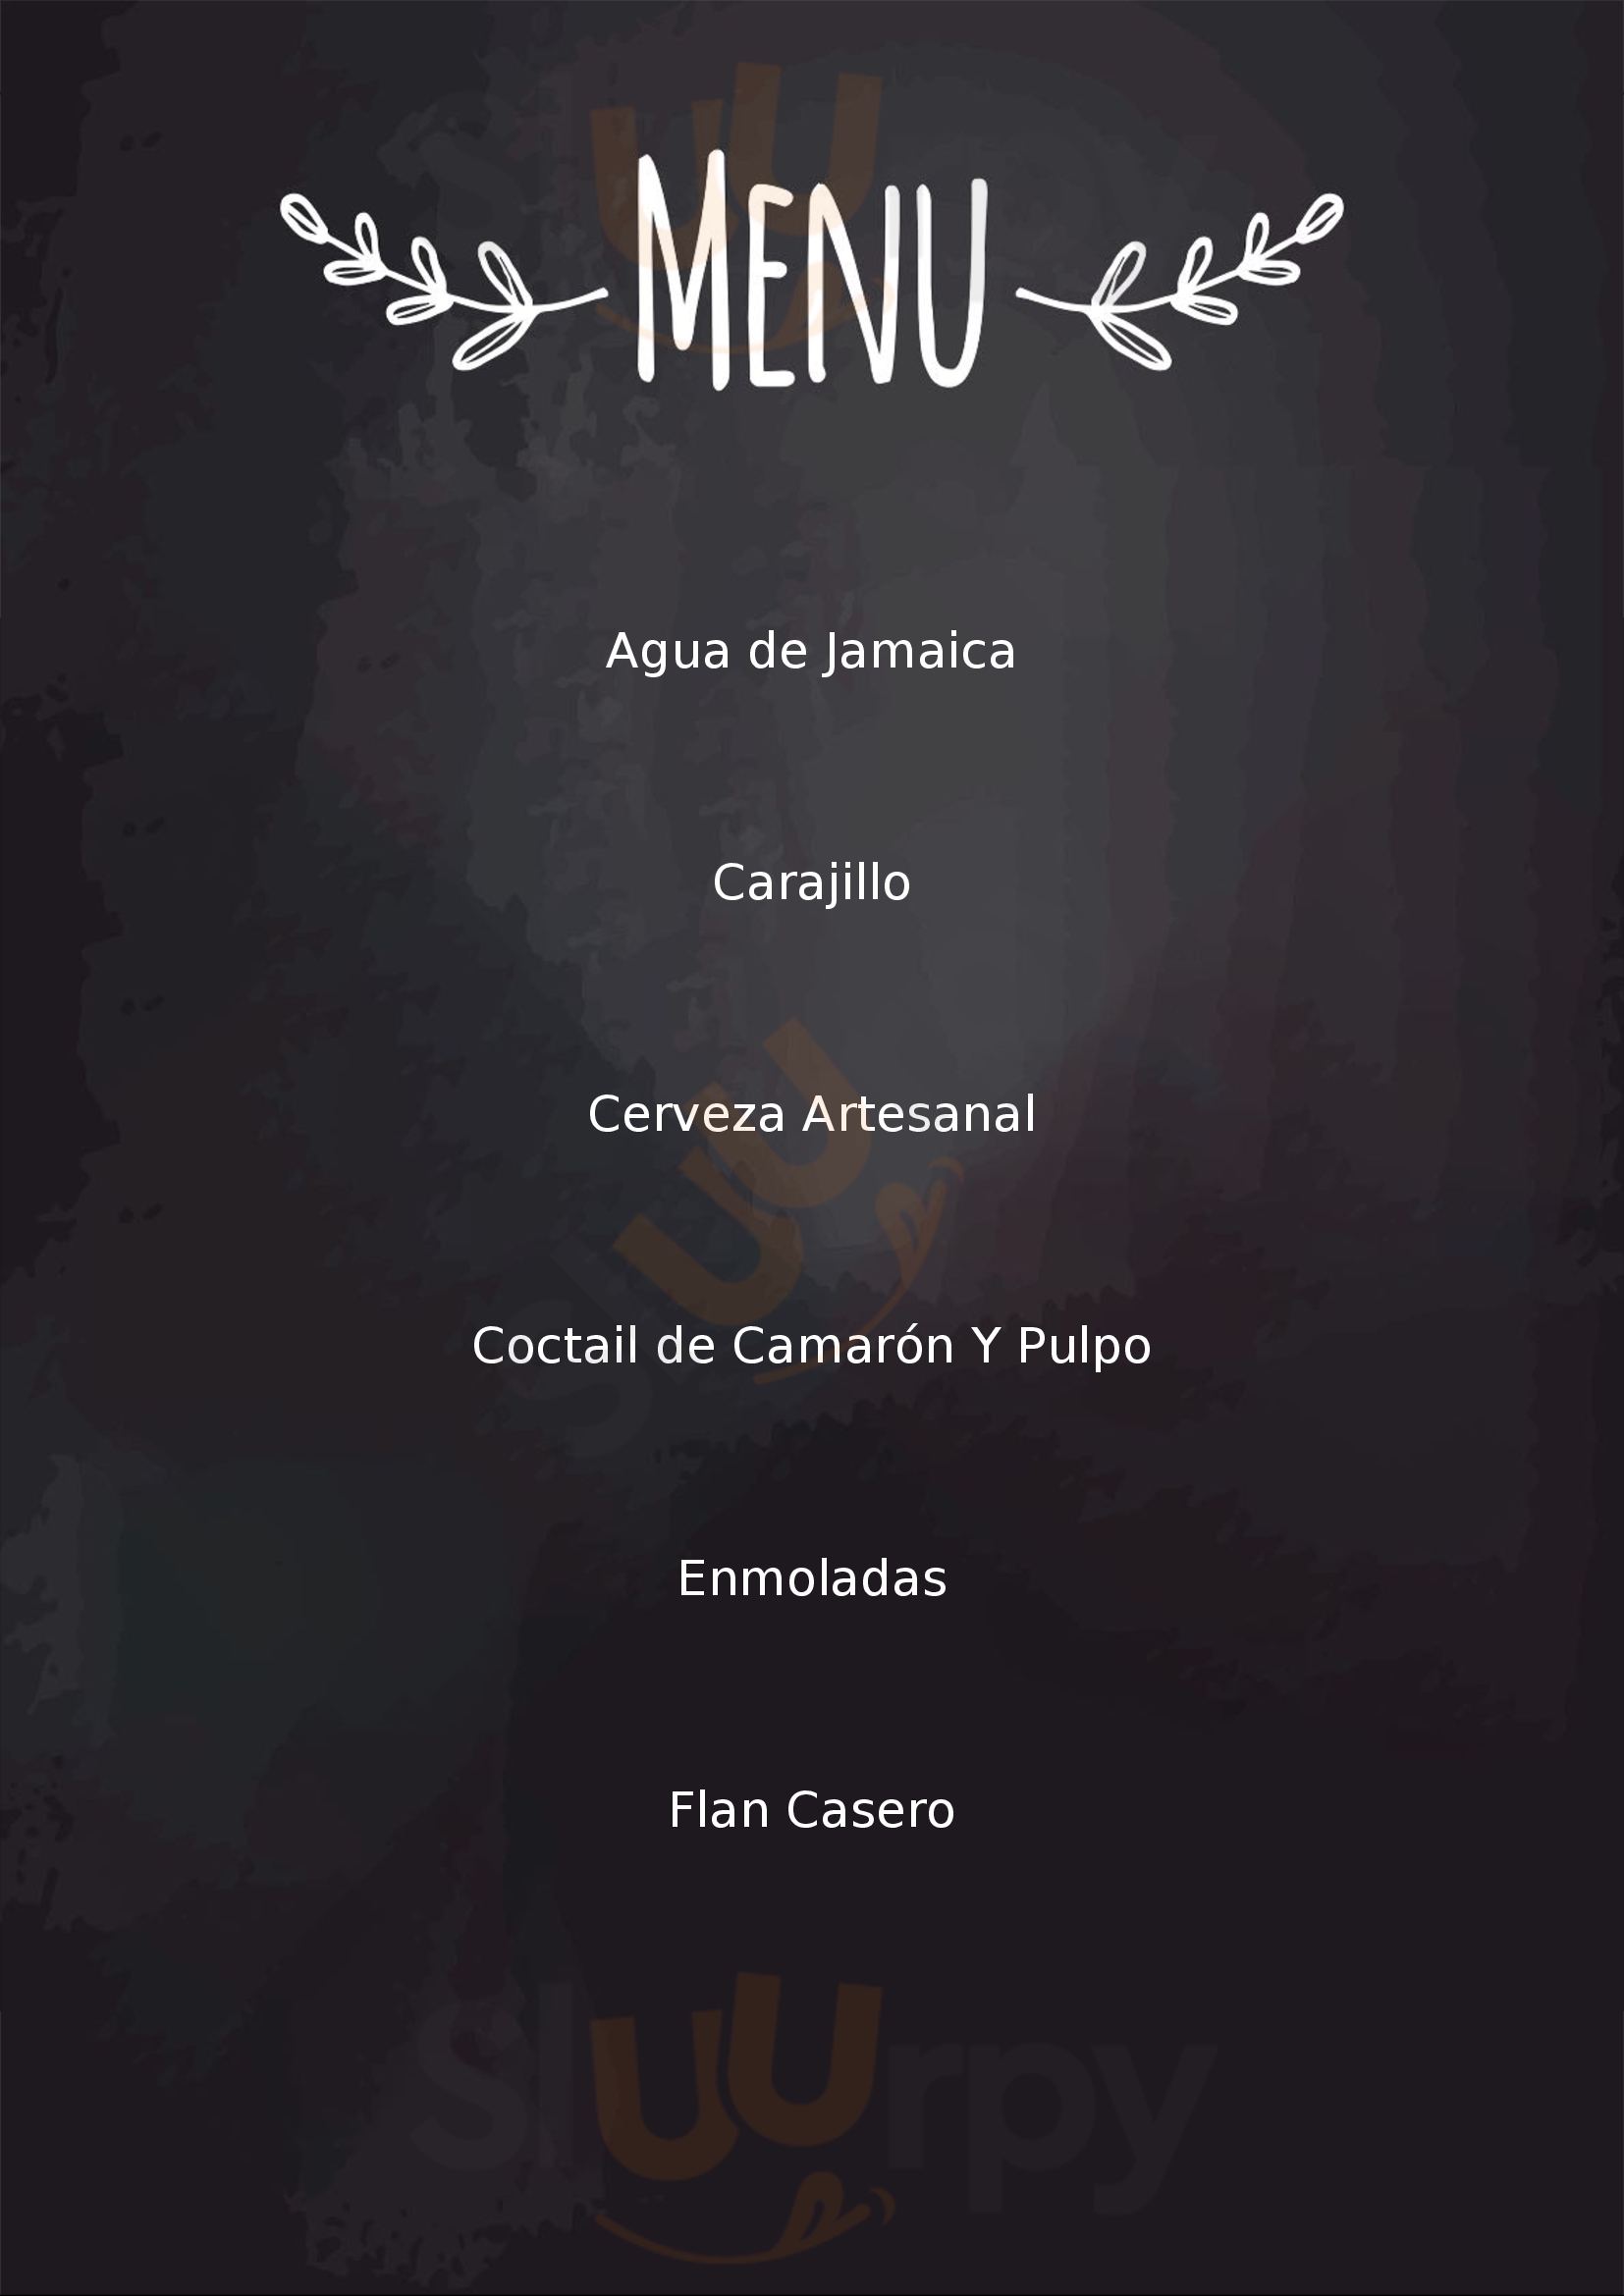 Los Milagros Terraza San Miguel de Allende Menu - 1